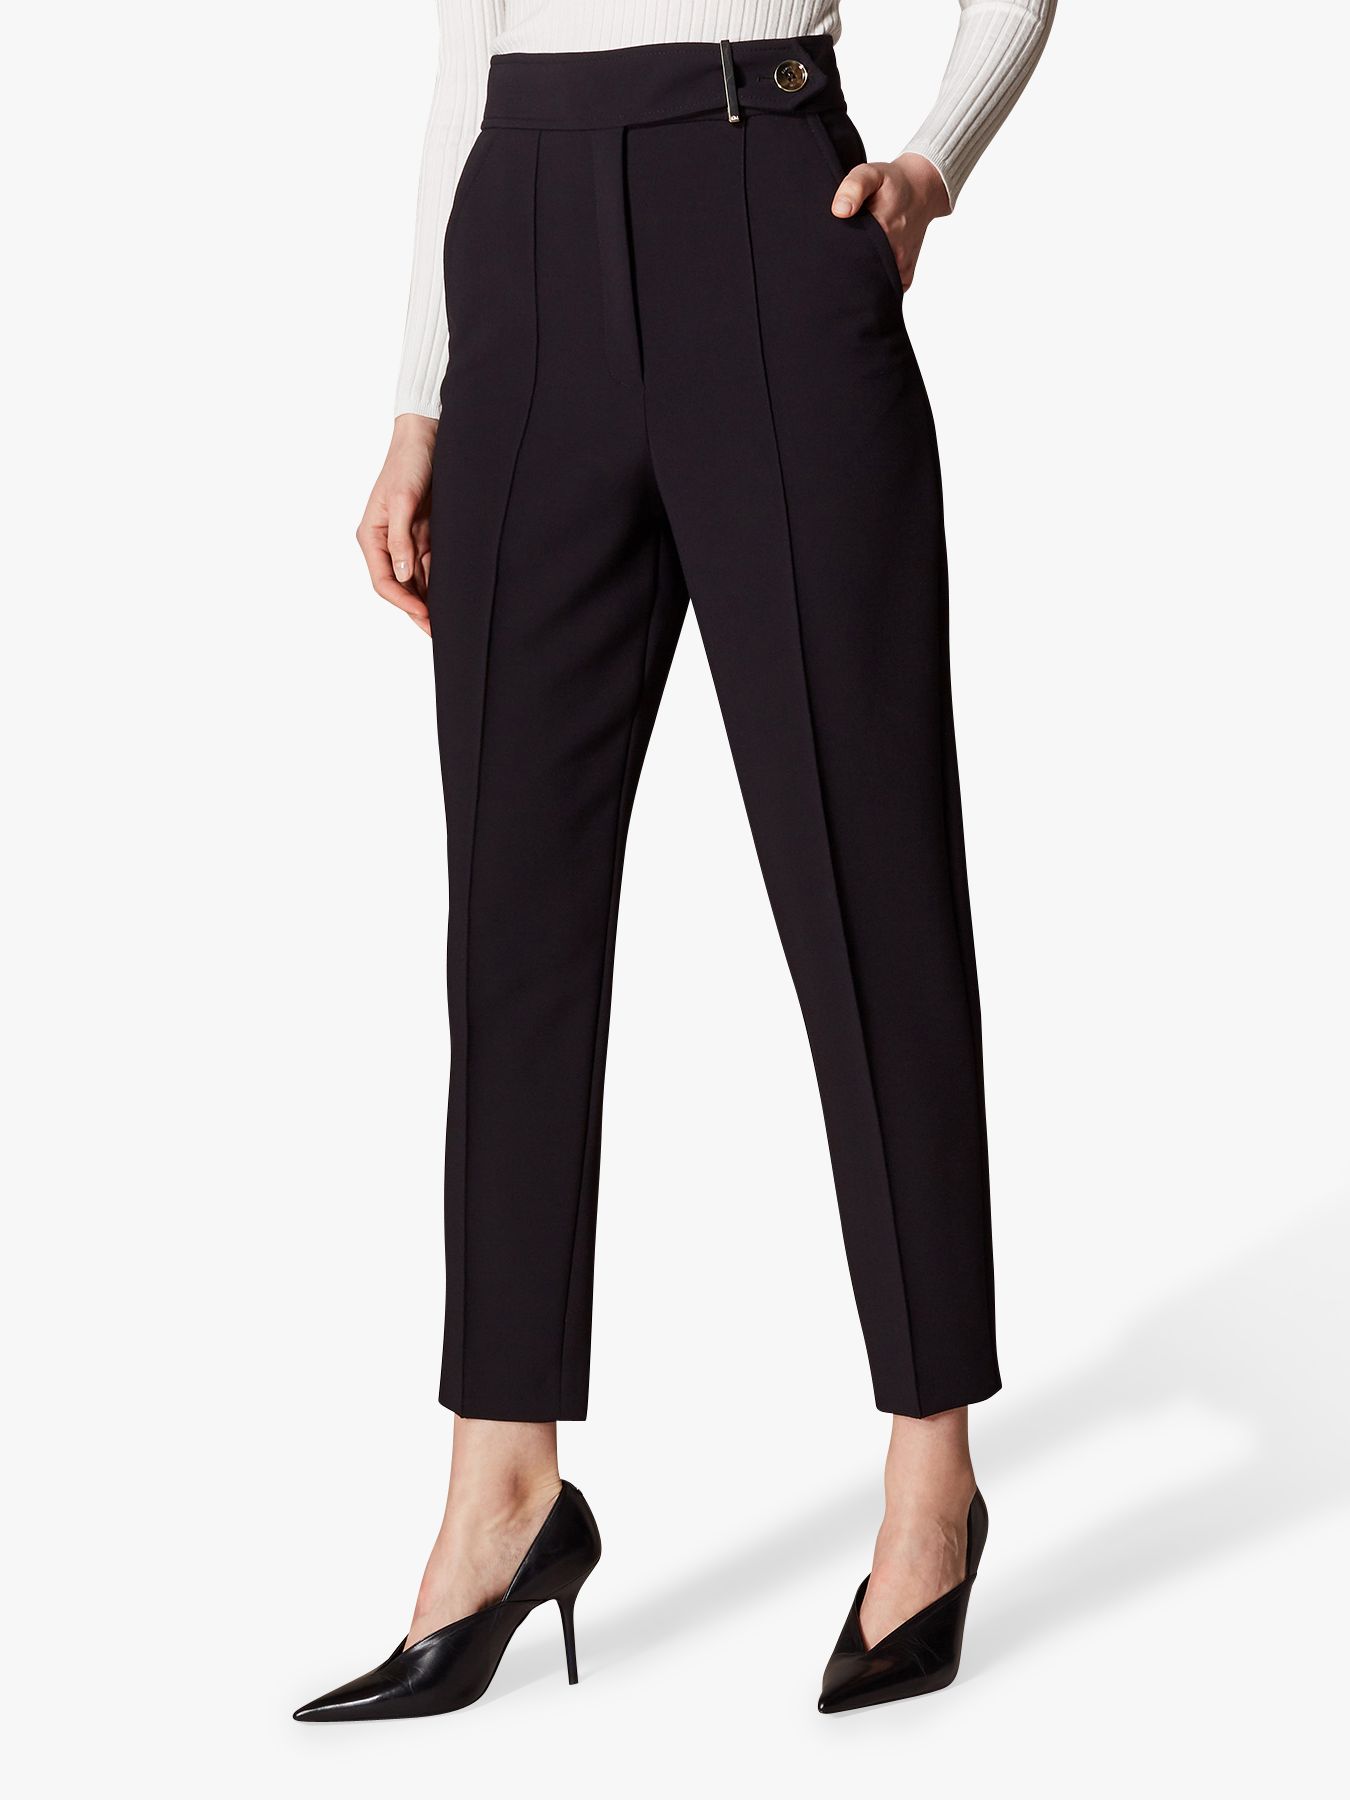 Karen Millen High Waist Tailored Trousers, Black